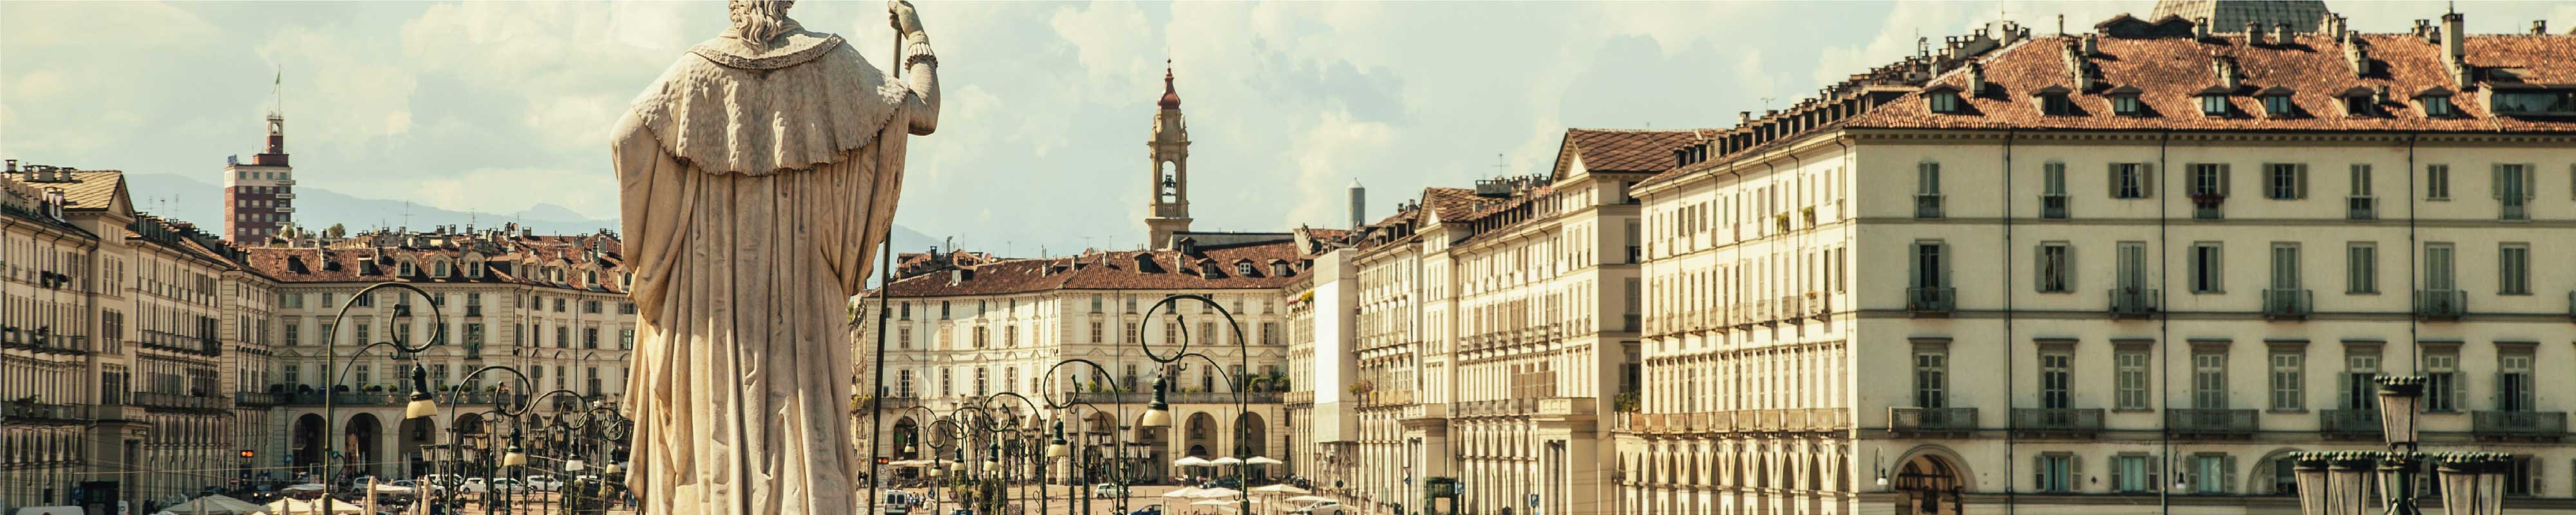 Gepäckaufbewahrung | stadtzentrum von Turin in Turin - Nannybag